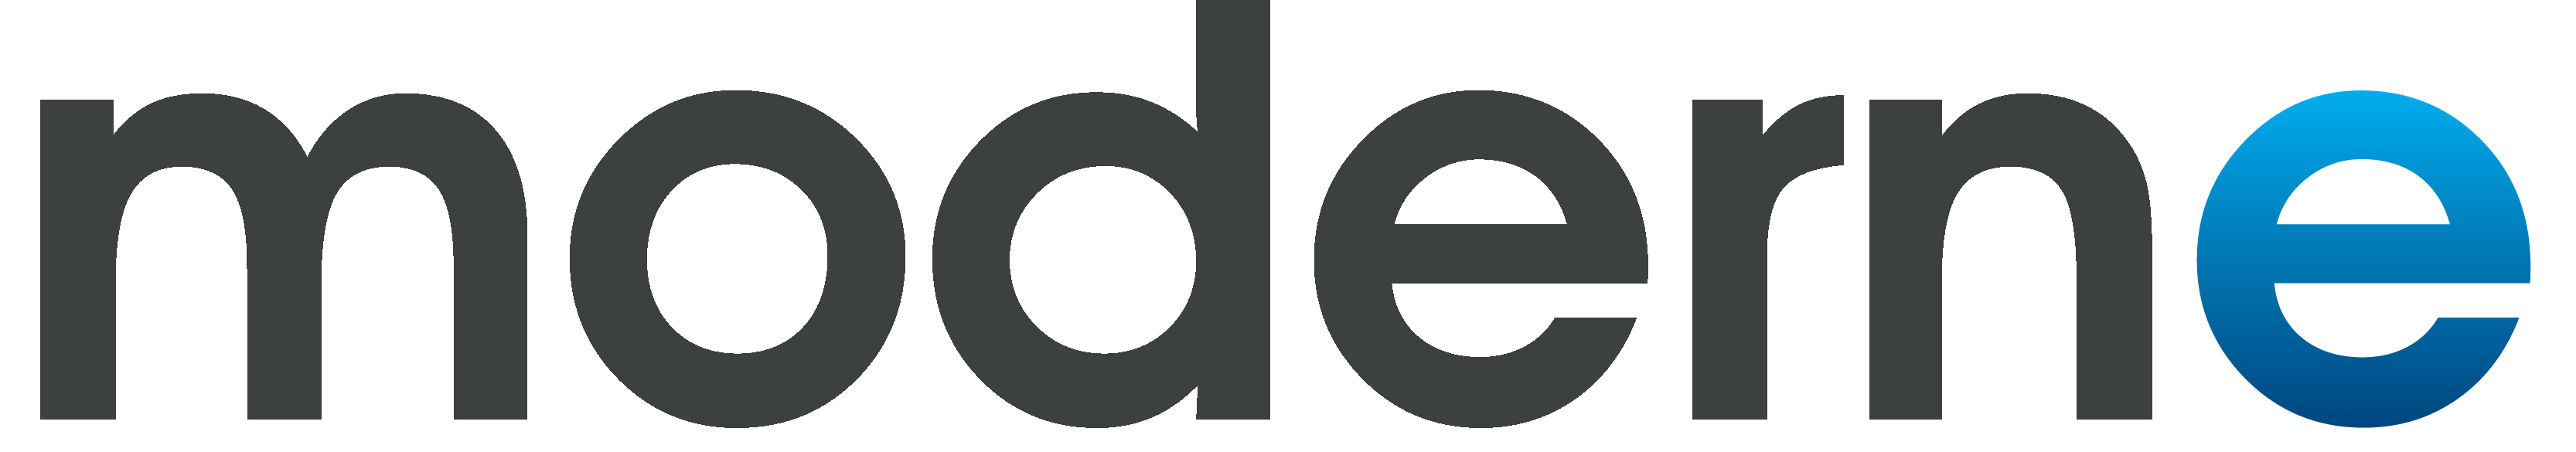 Moderne 2017 Logo Transparent.png